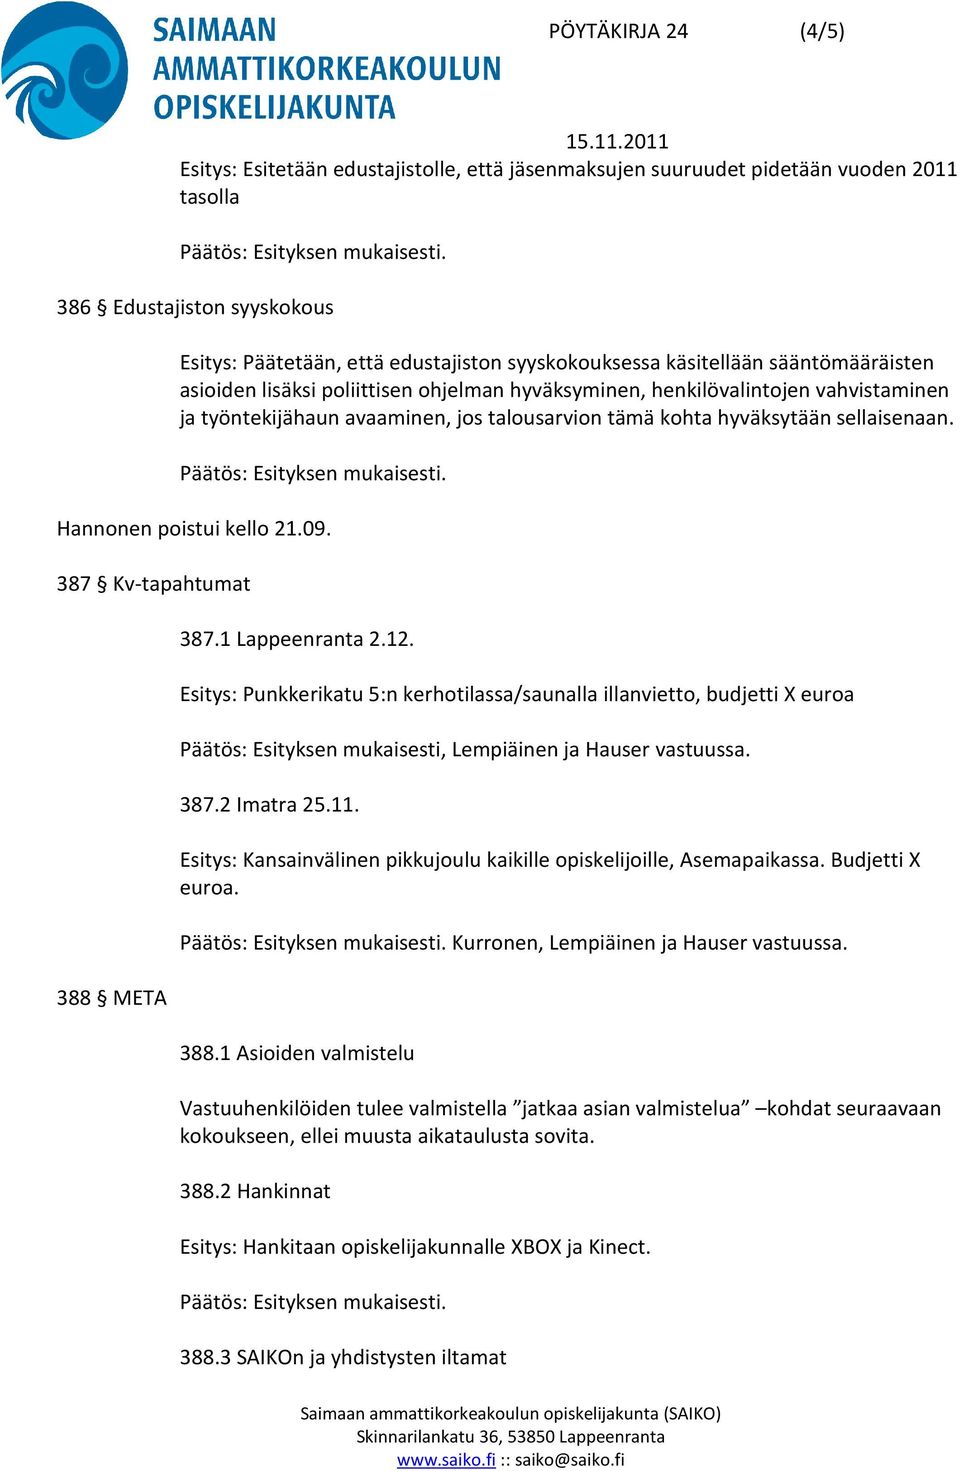 Hannonen poistui kello 21.09. 387 Kv-tapahtumat 388 META 387.1 Lappeenranta 2.12.